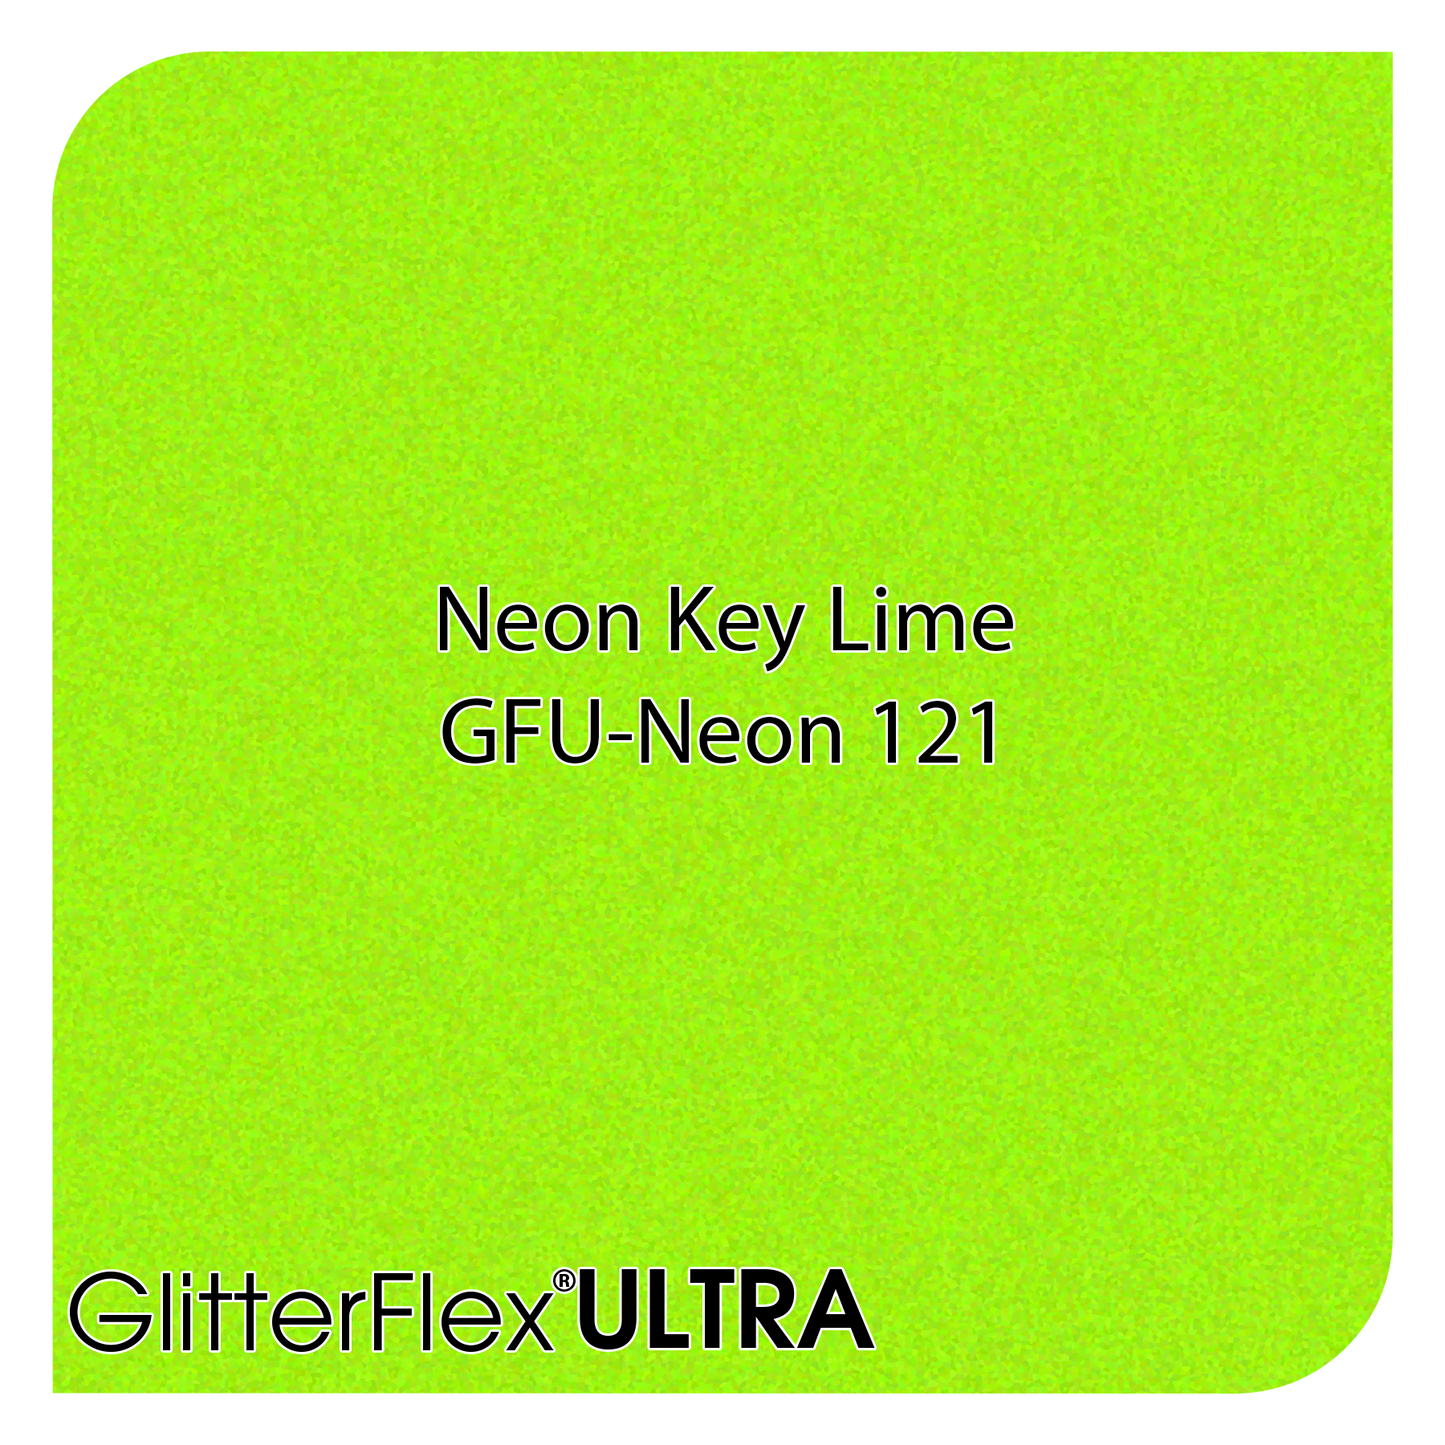 GLITTERFLEX® ULTRA NEONS - 12" x 10 Yard (30 Feet)